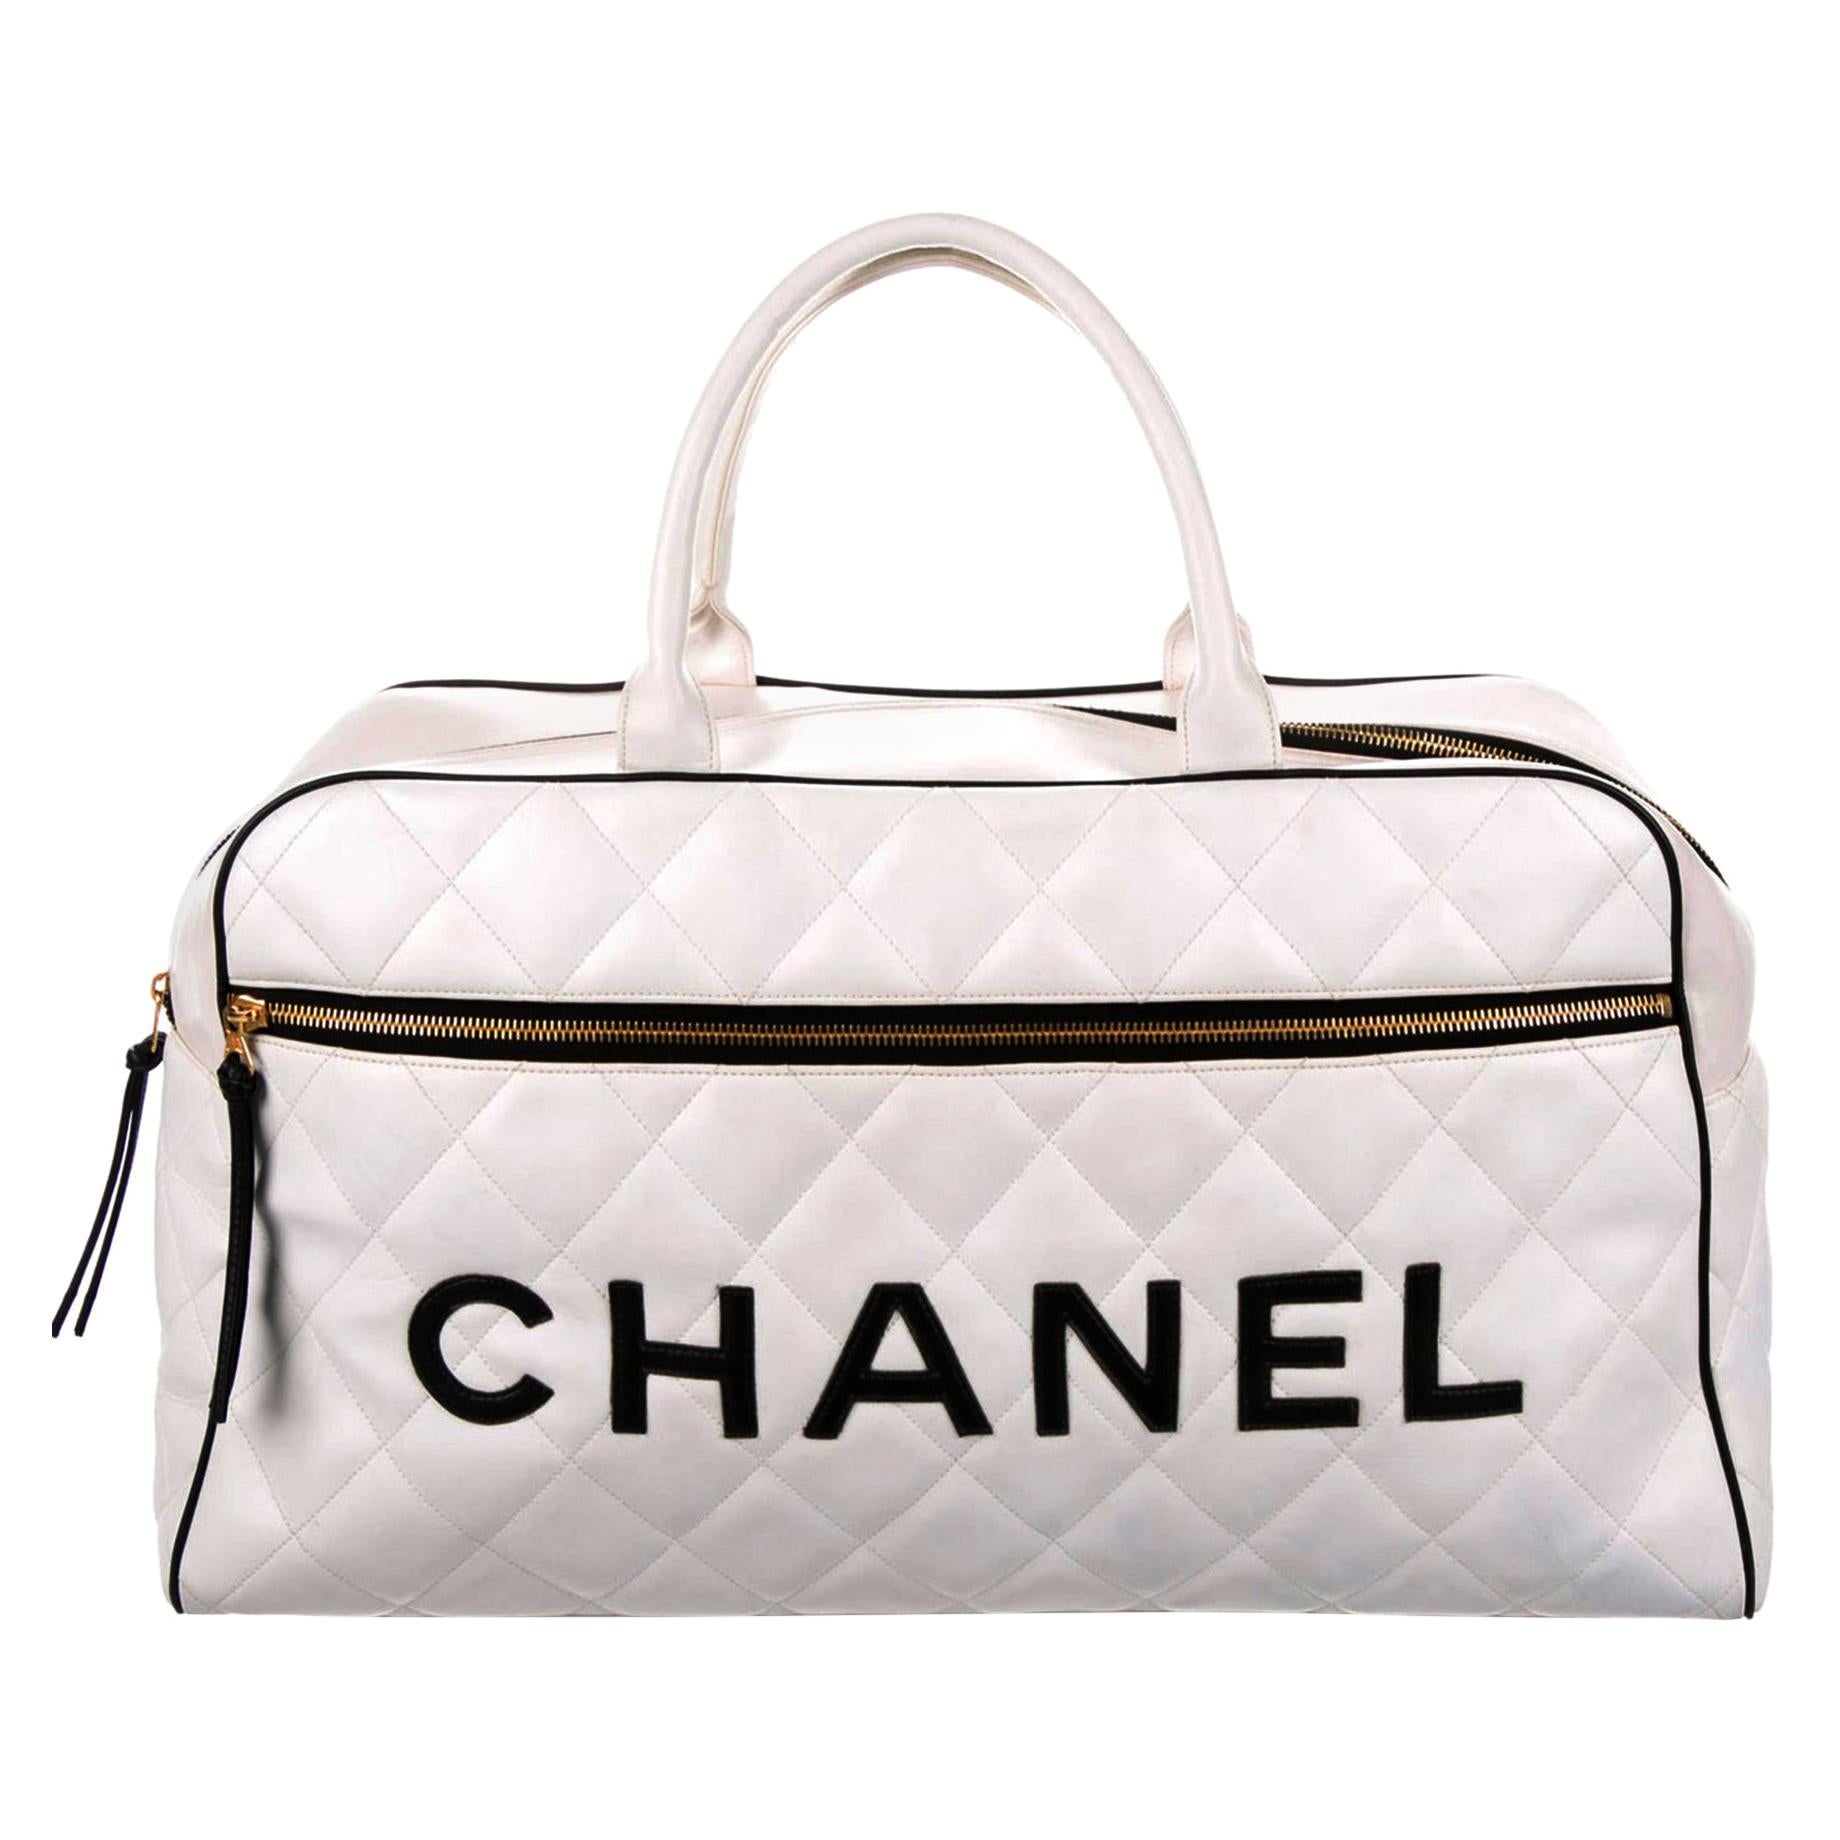 Sac de voyage en cuir surdimensionné Chanel avec logo matelassé. 

1992 {VINTAGE 30 Years}
Lettre 